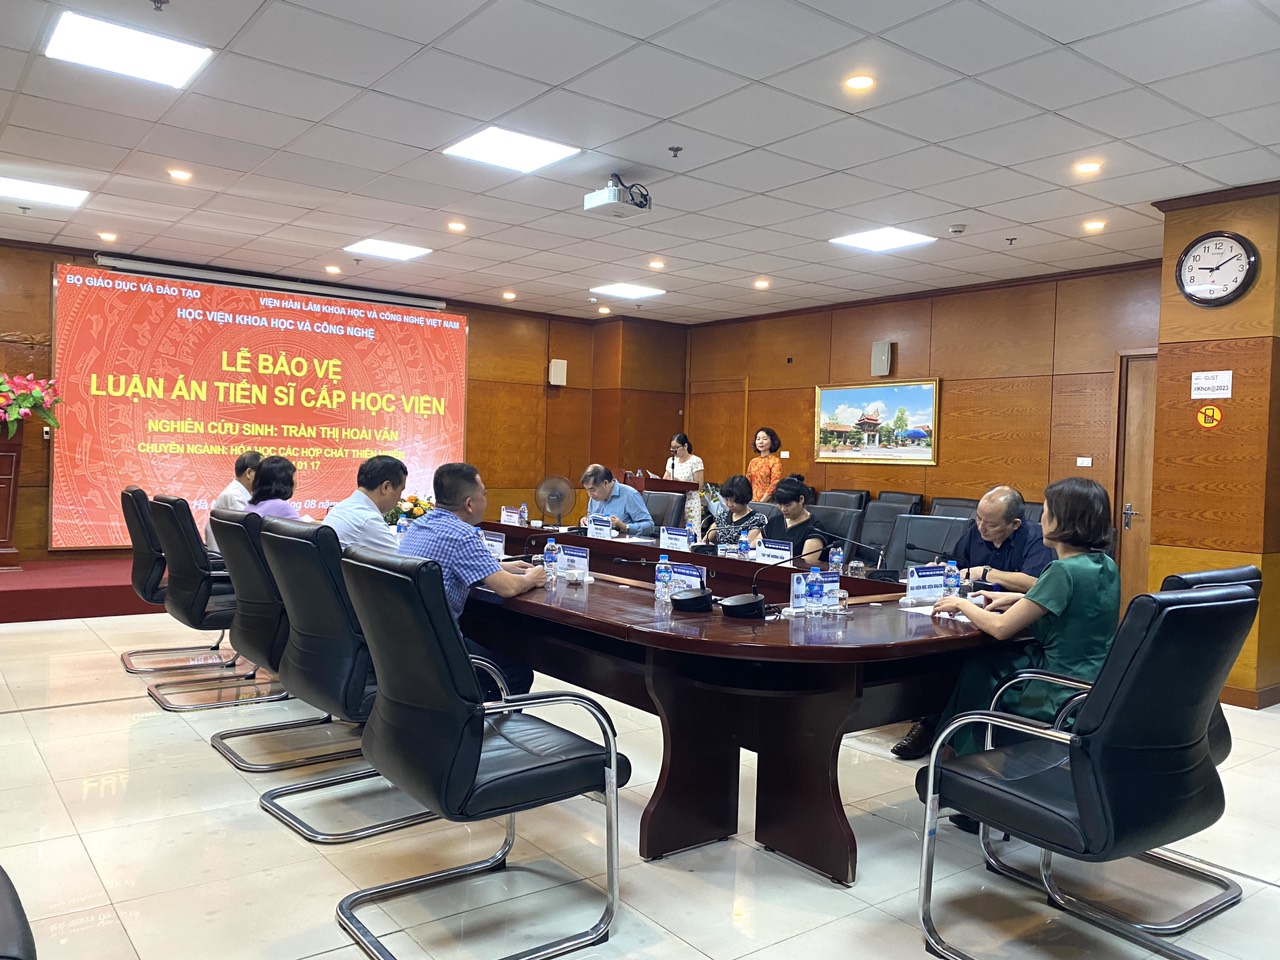 Lễ bảo vệ luận án Tiến sĩ cấp Học viện của nghiên cứu sinh Trần Thị Hoài Vân